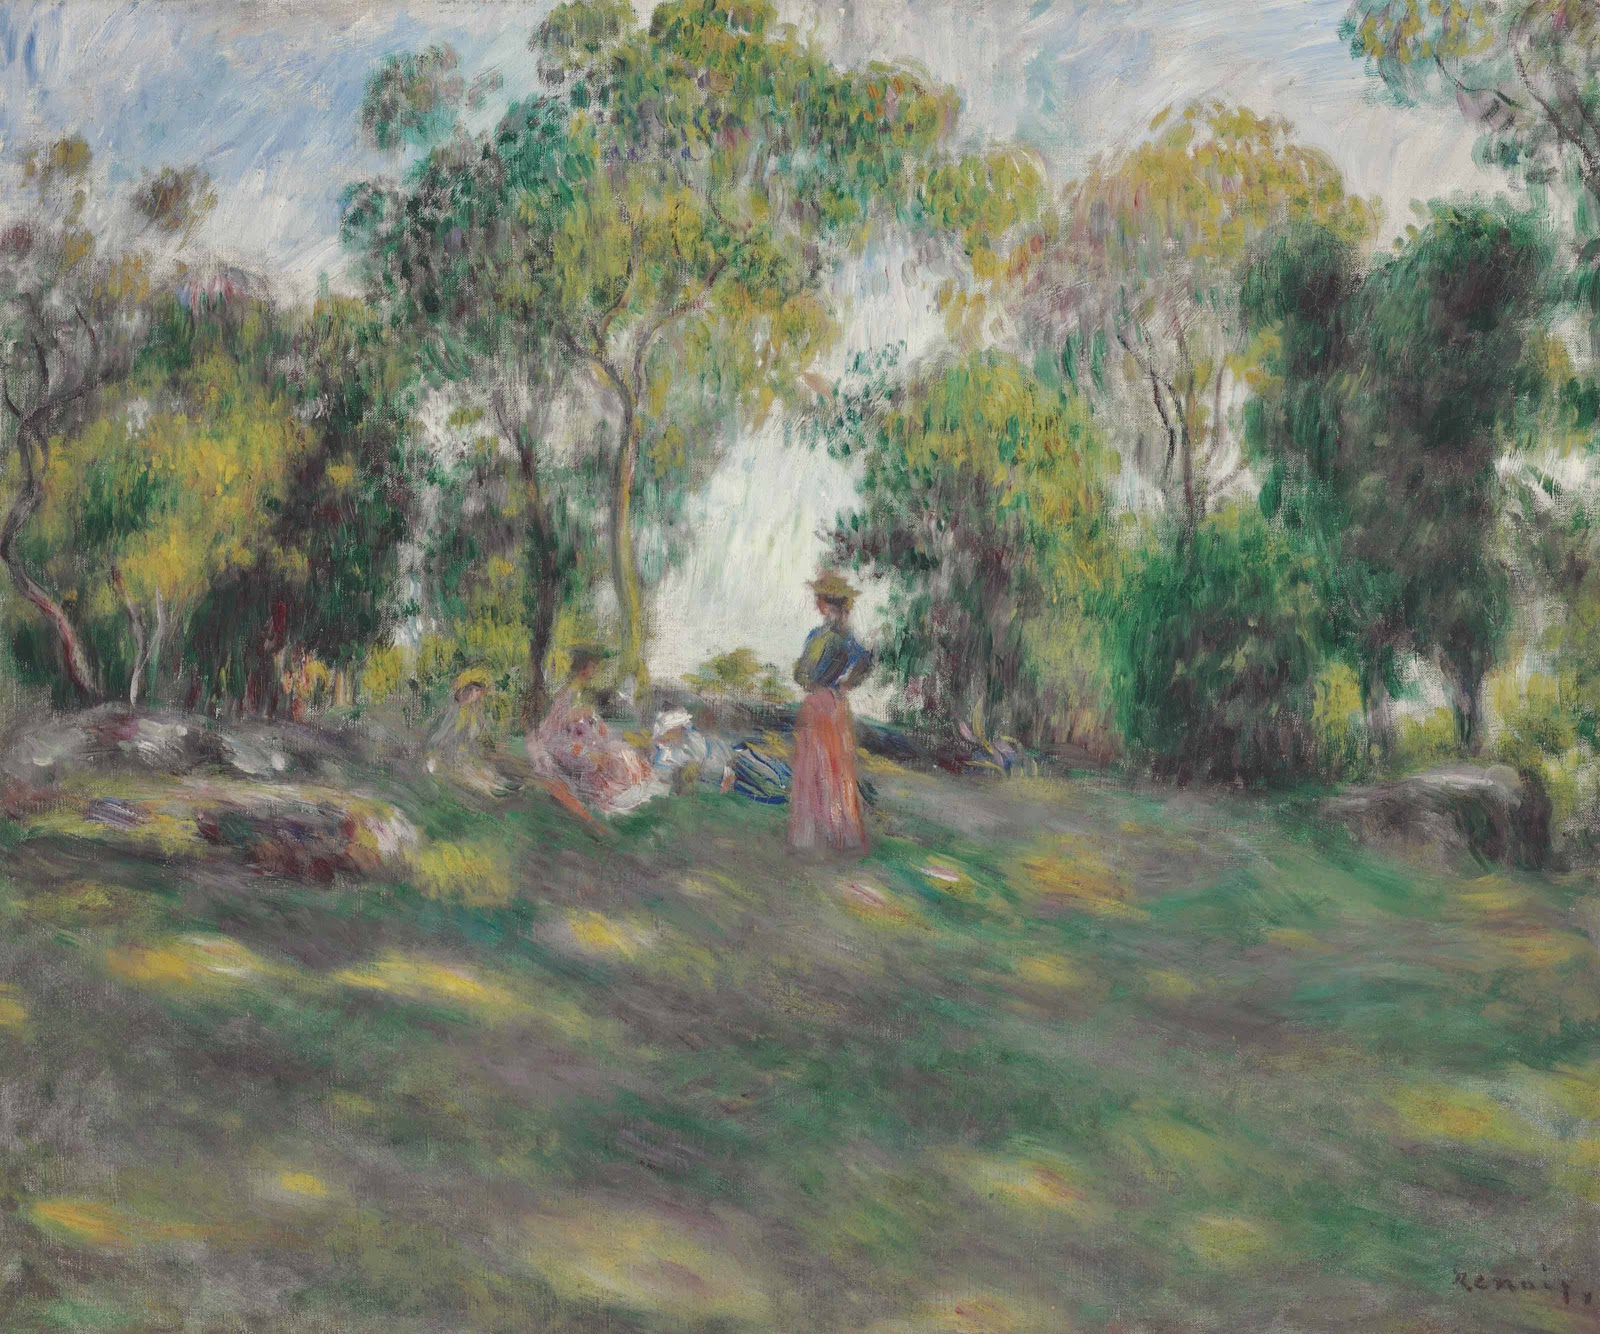 Pierre+Auguste+Renoir-1841-1-19 (843).jpg